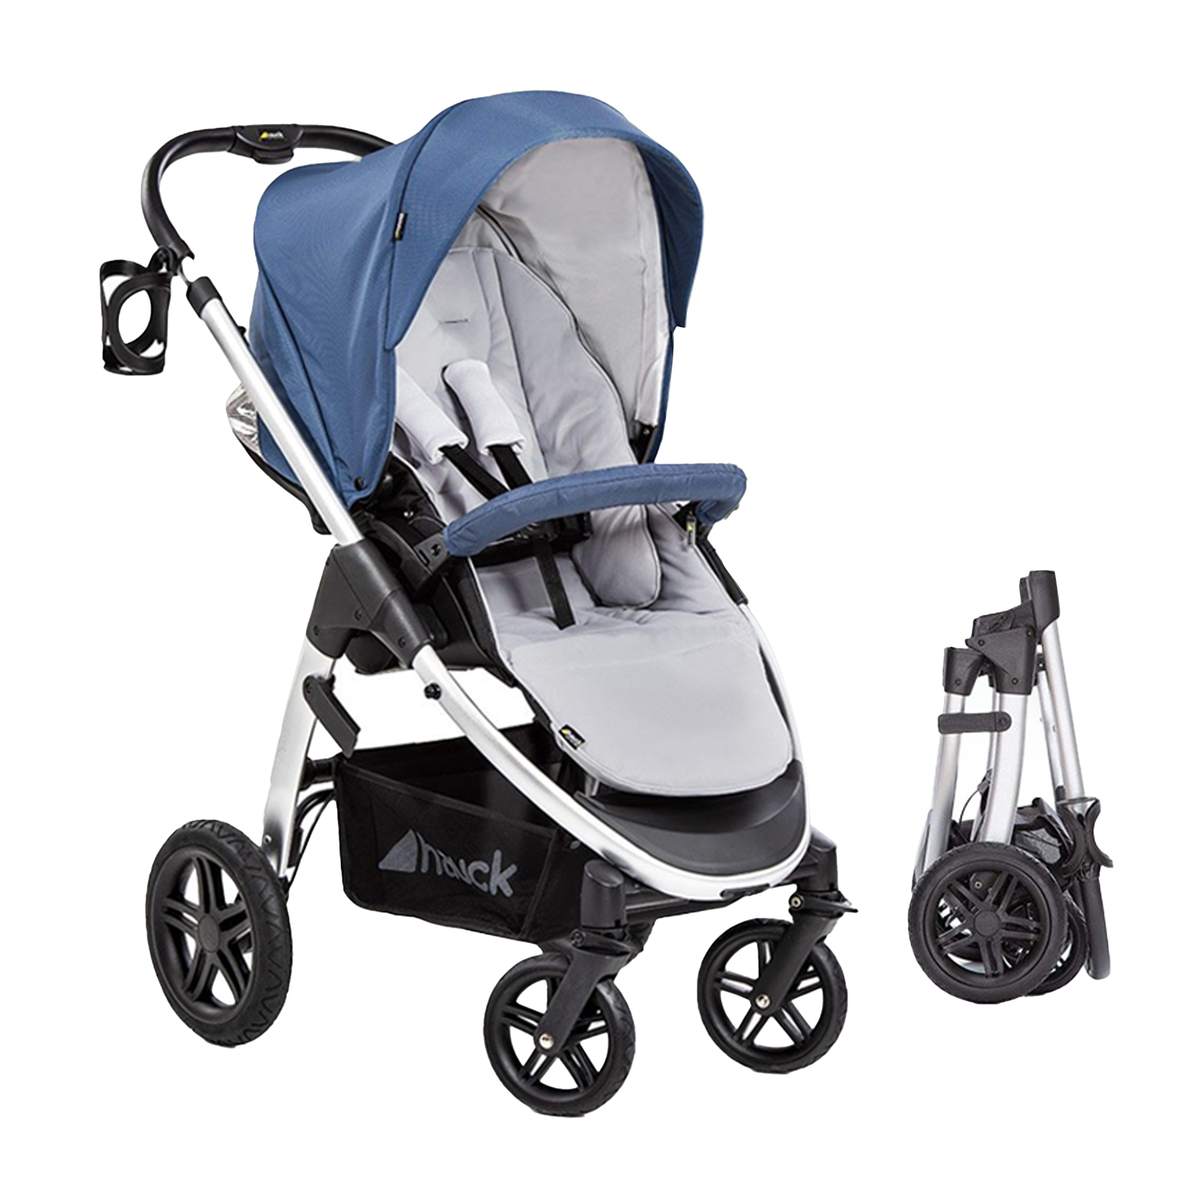 Hauck Baby Stroller 141434